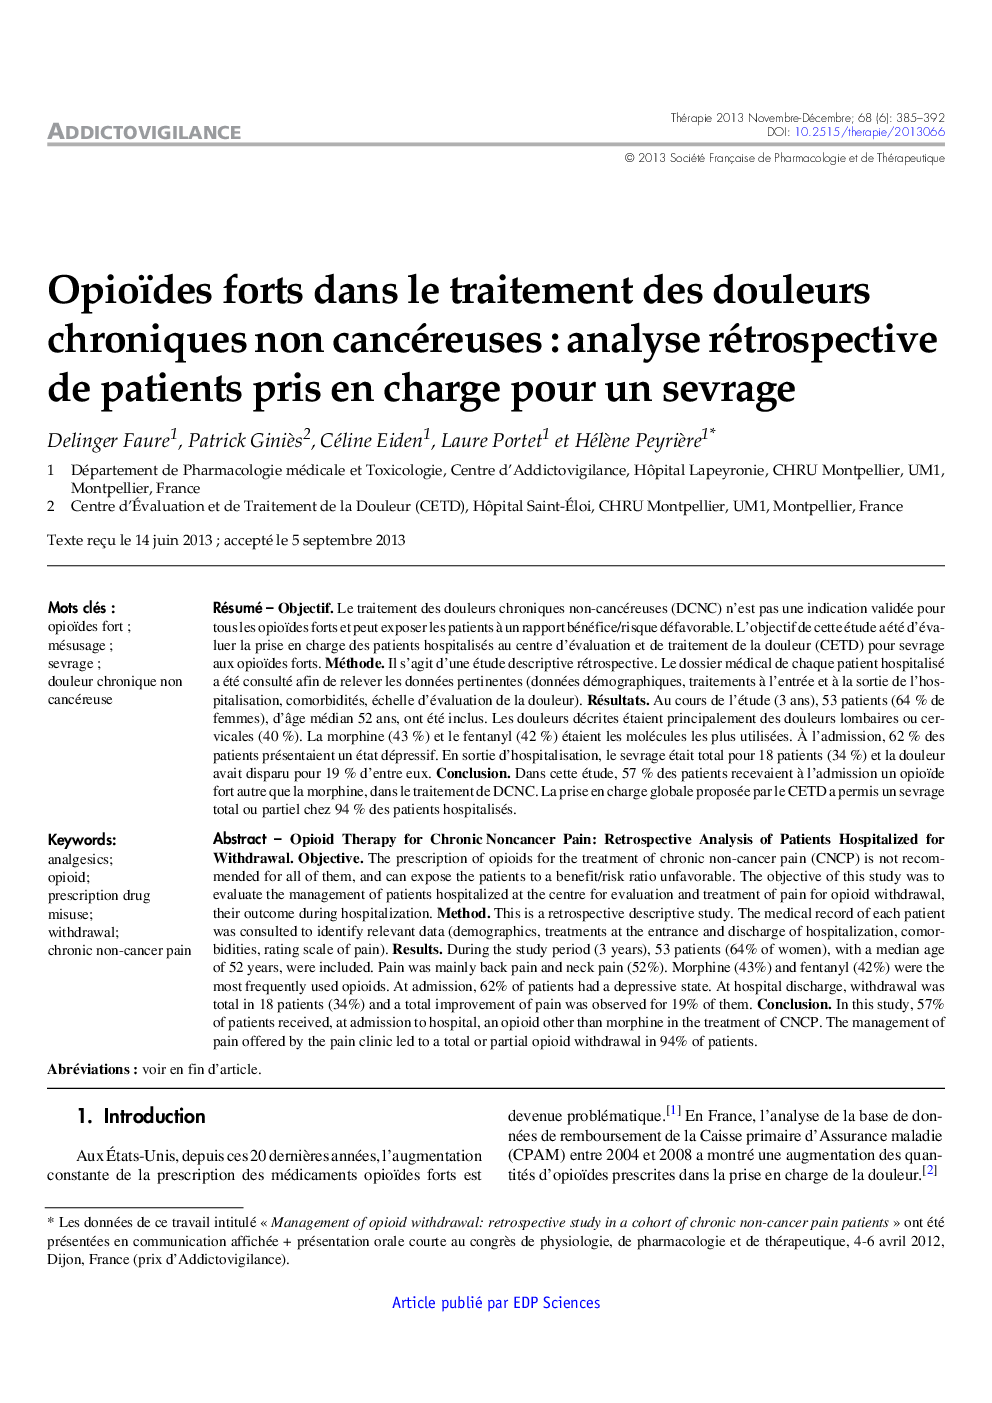 Opioïdes forts dans le traitement des douleurs chroniques non cancéreuses : analyse rétrospective de patients pris en charge pour un sevrage